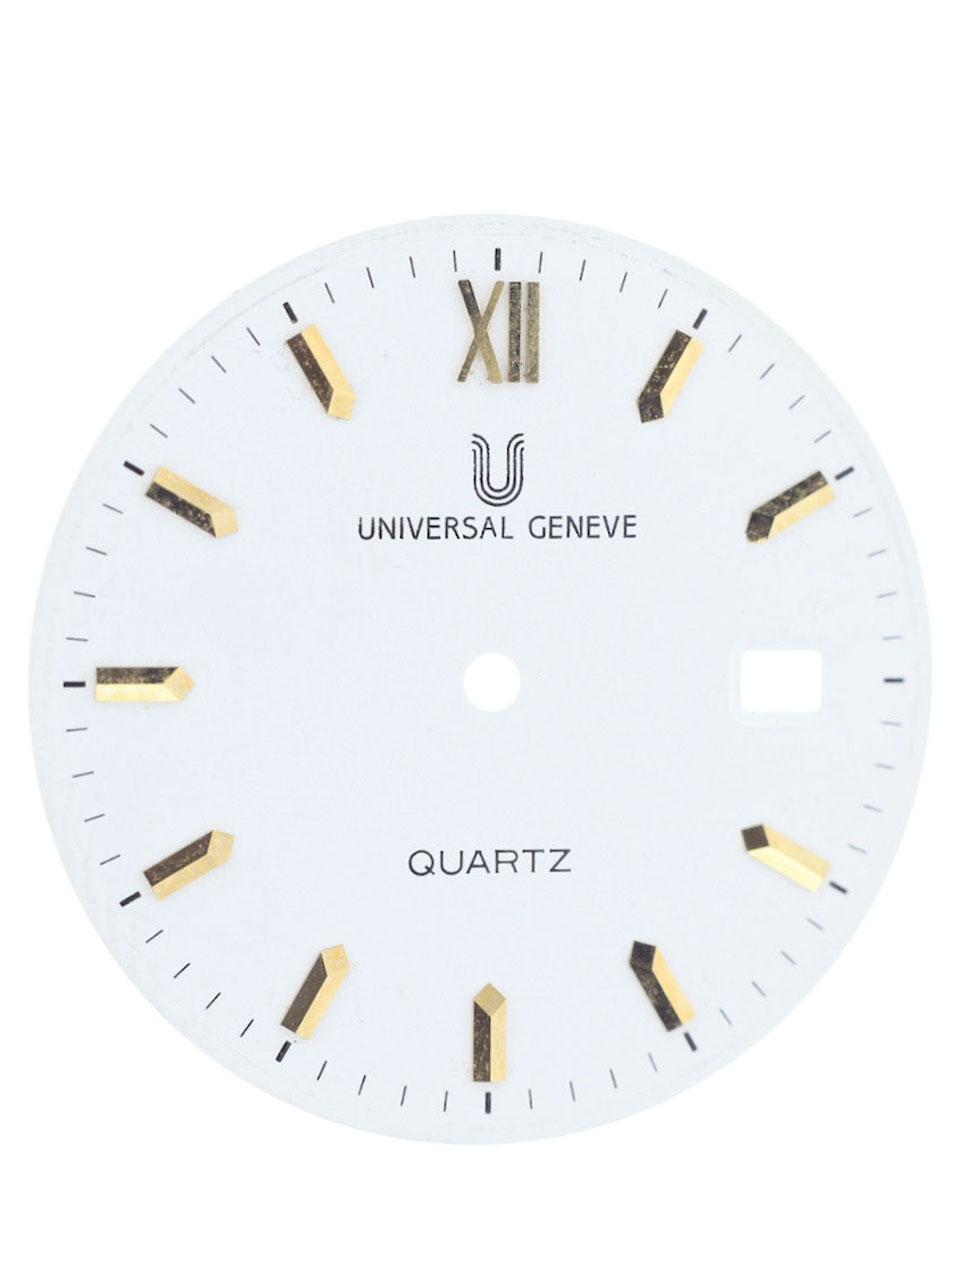 Universal Date Quartz 1990s - Gisbert A. Joseph Watches